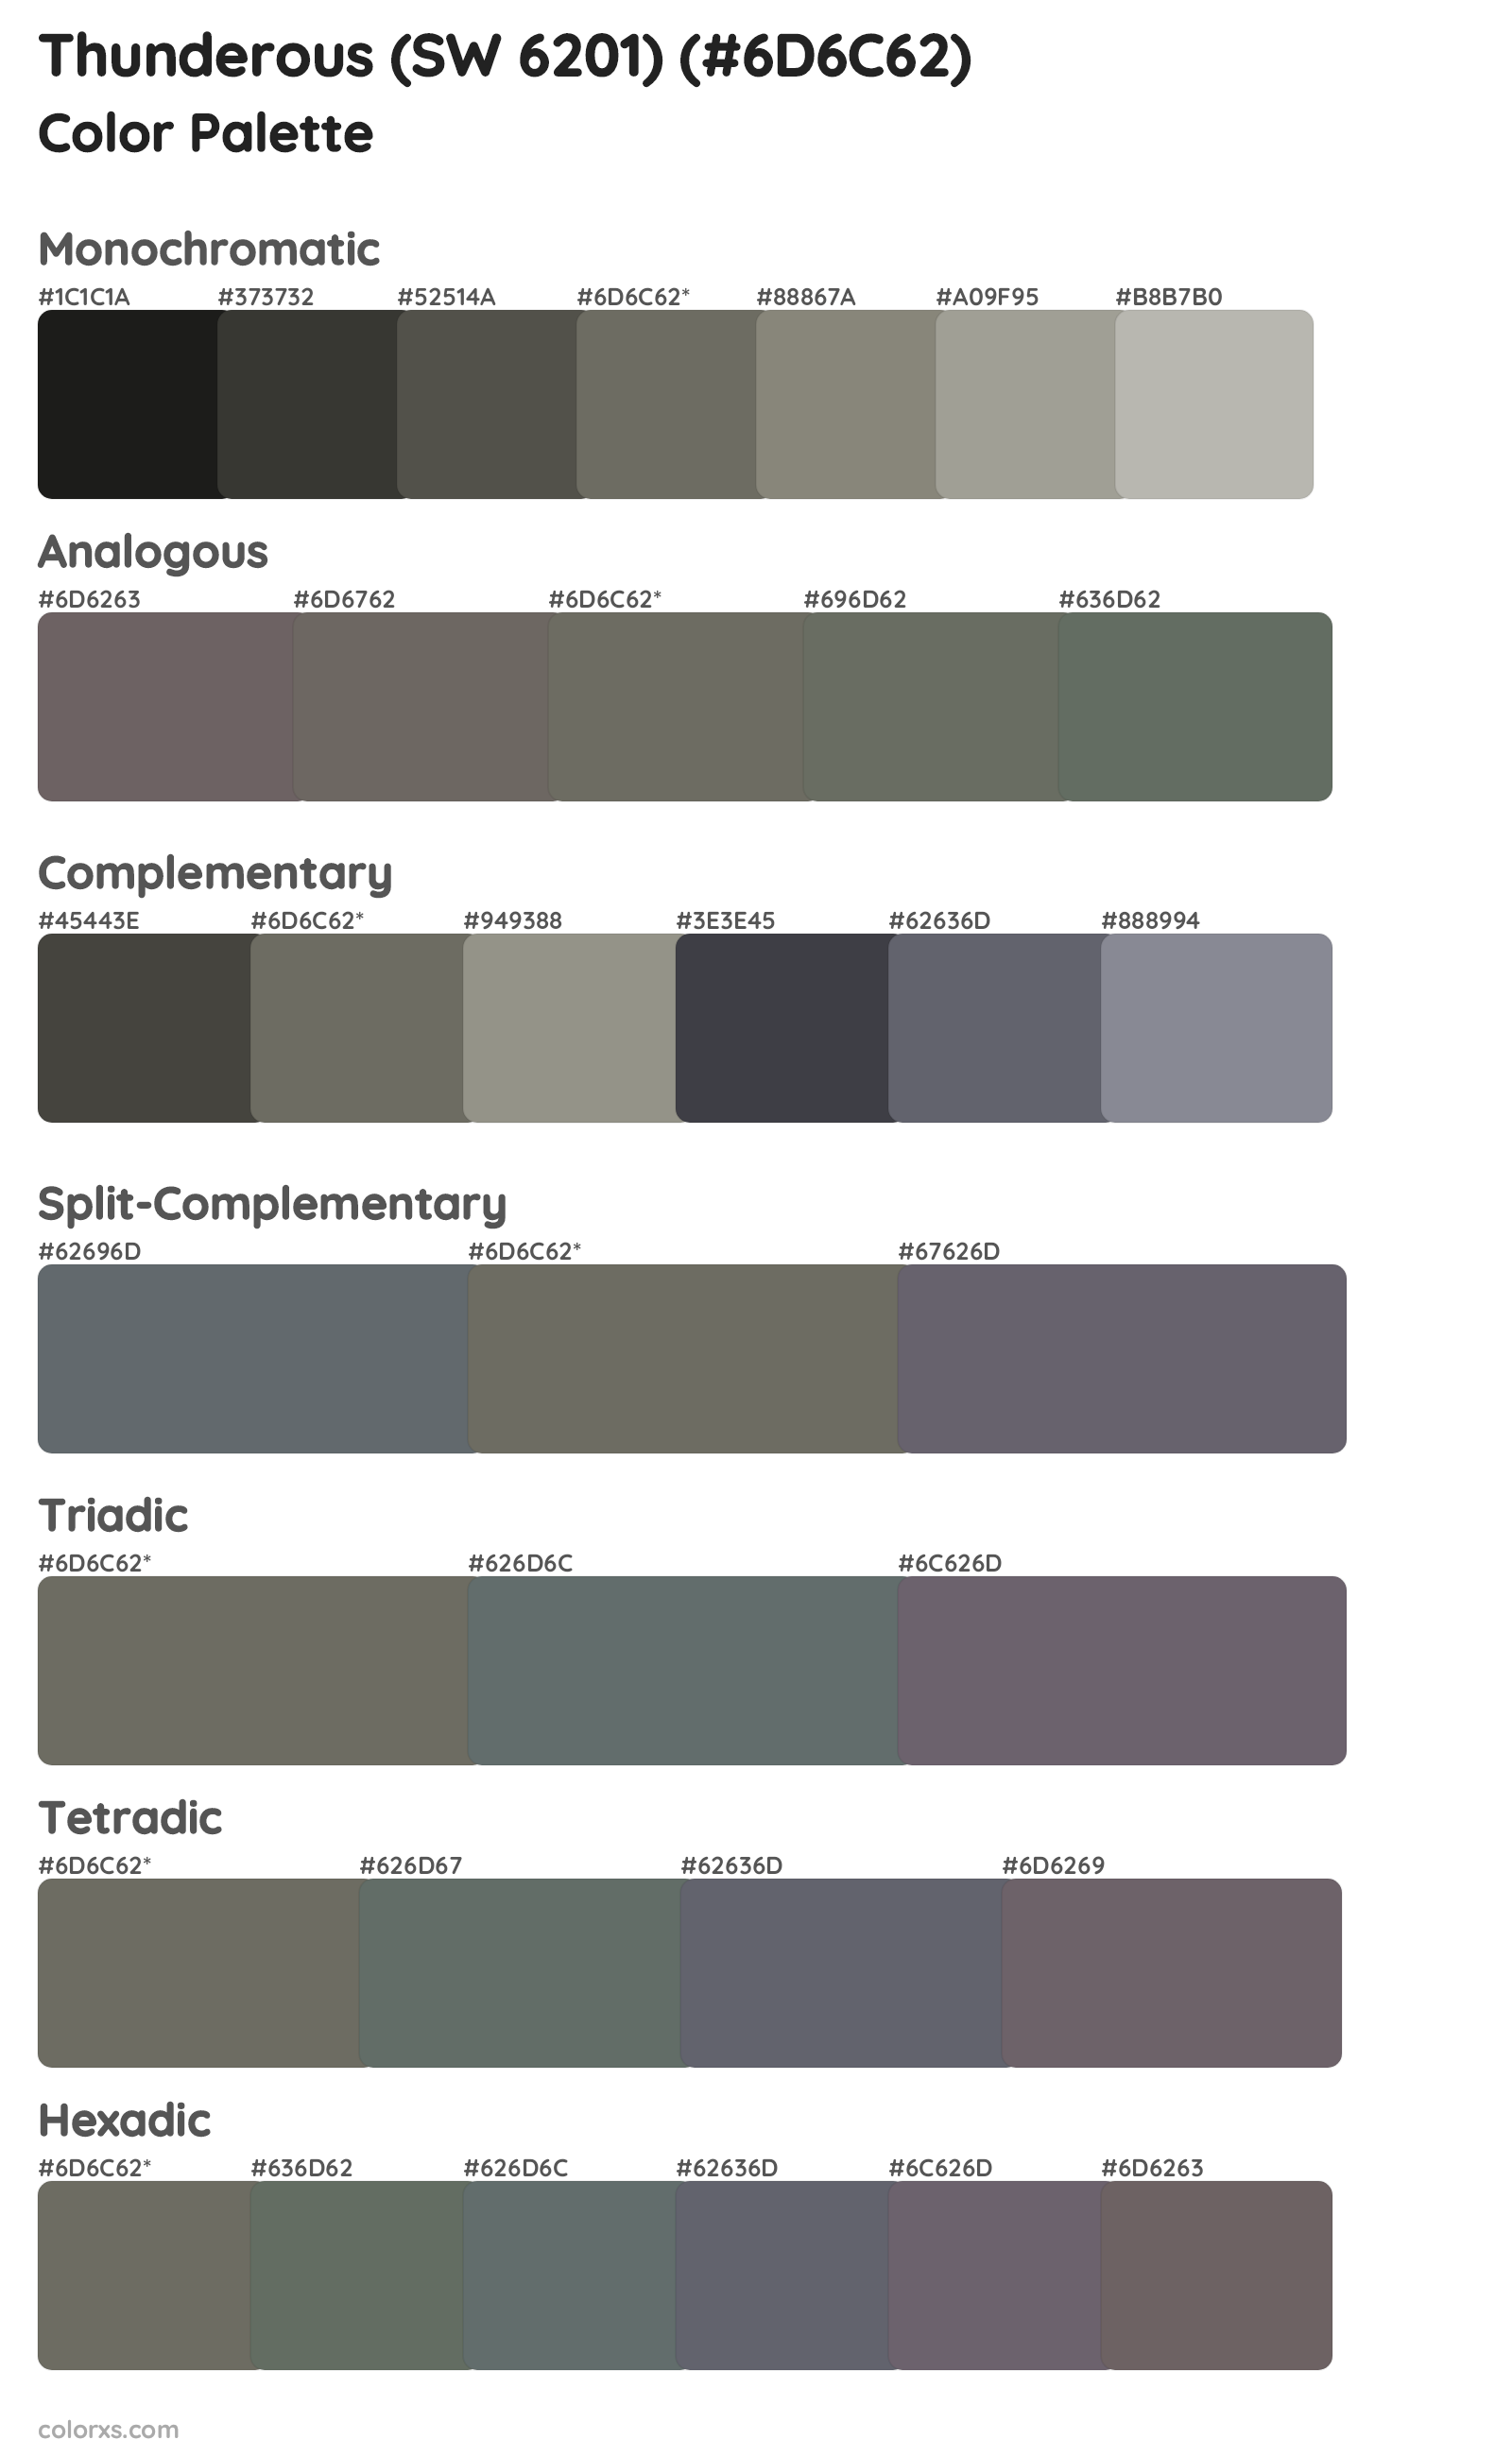 Thunderous (SW 6201) Color Scheme Palettes